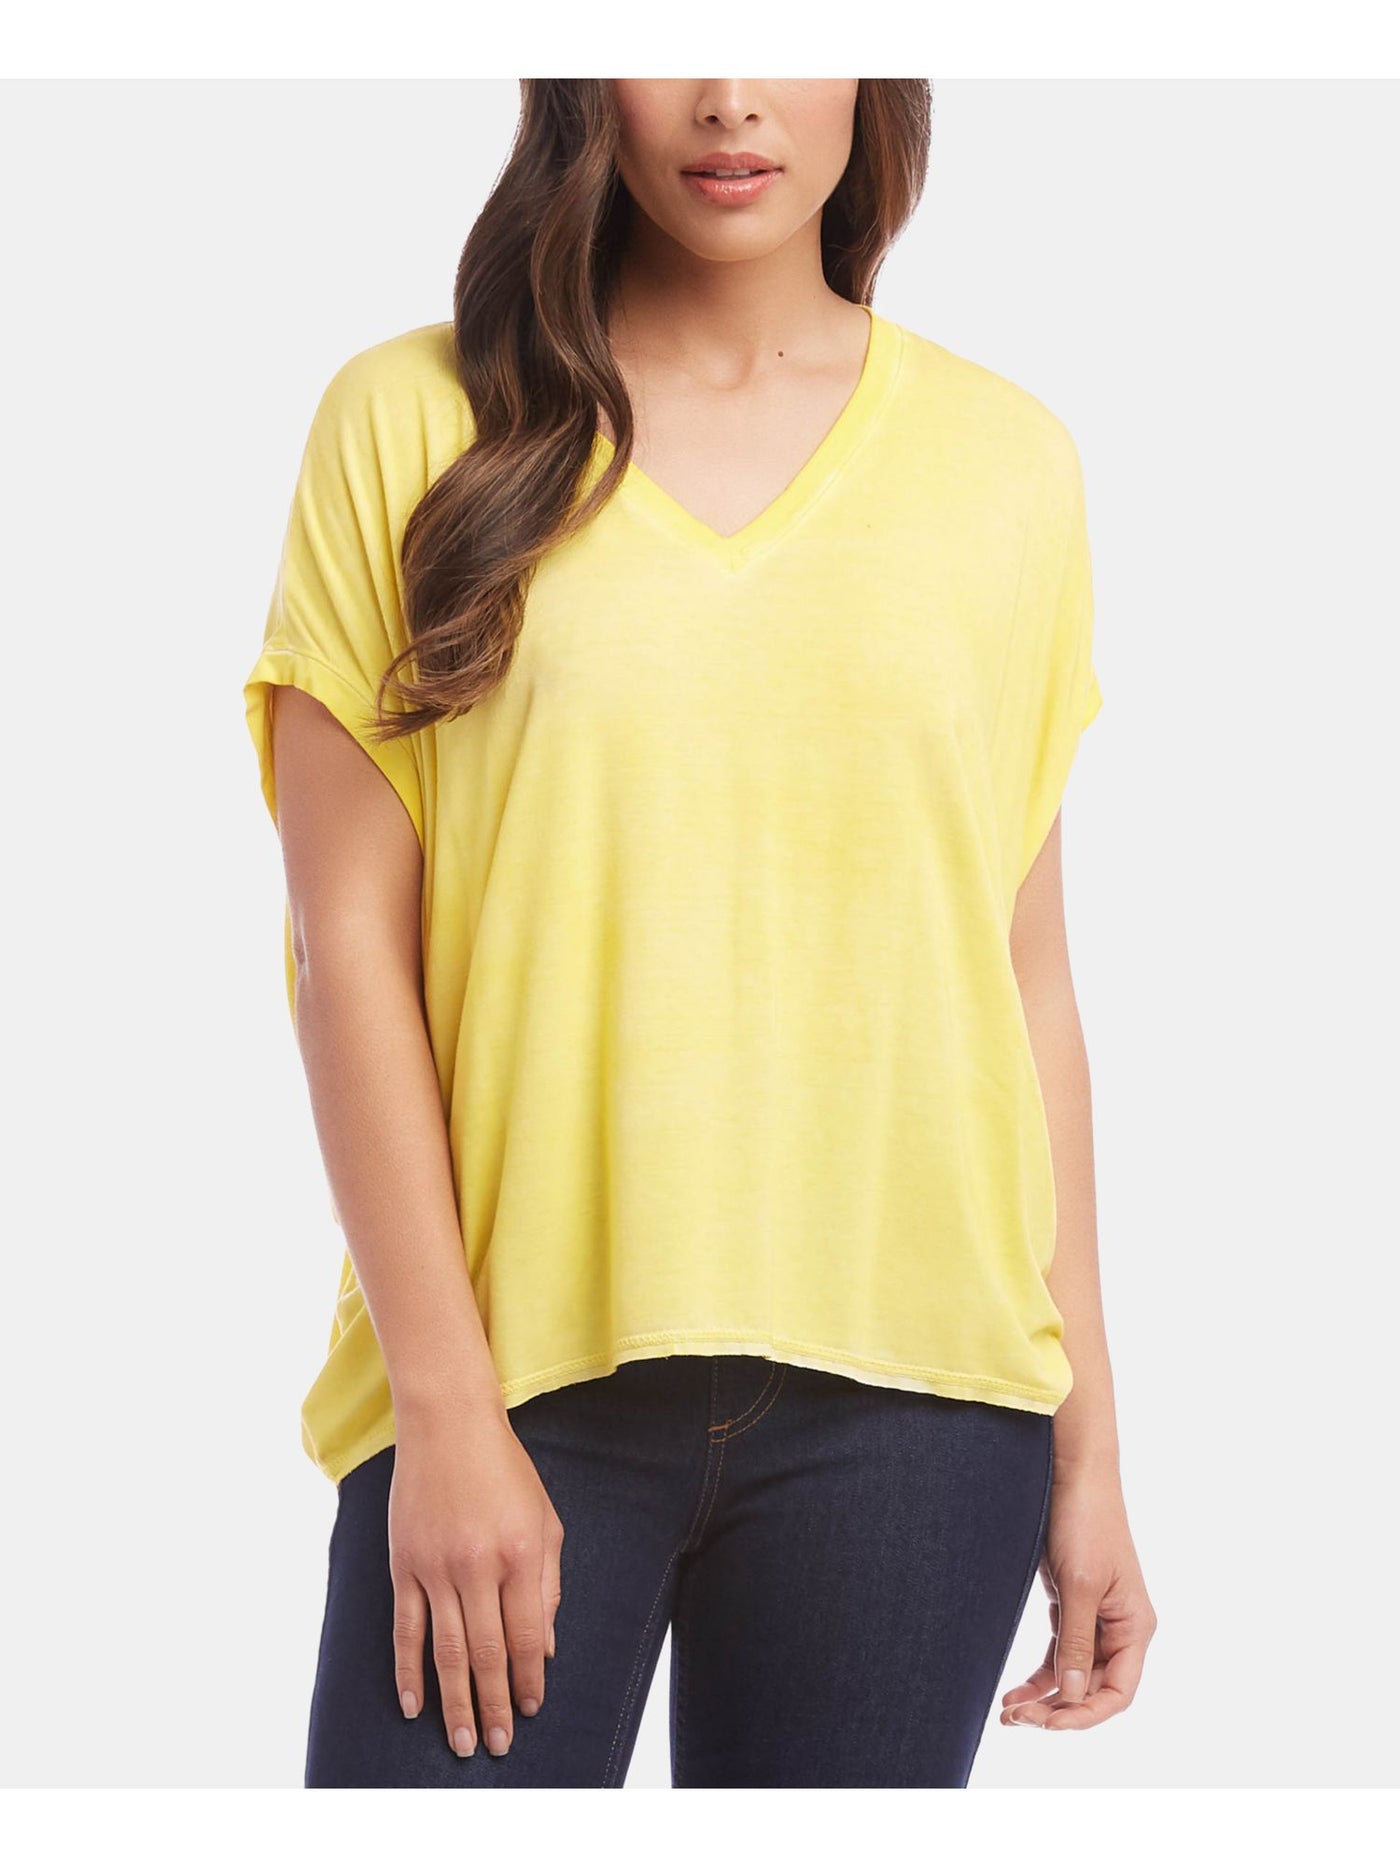 KAREN KANE Womens Yellow Short Sleeve V Neck T-Shirt L